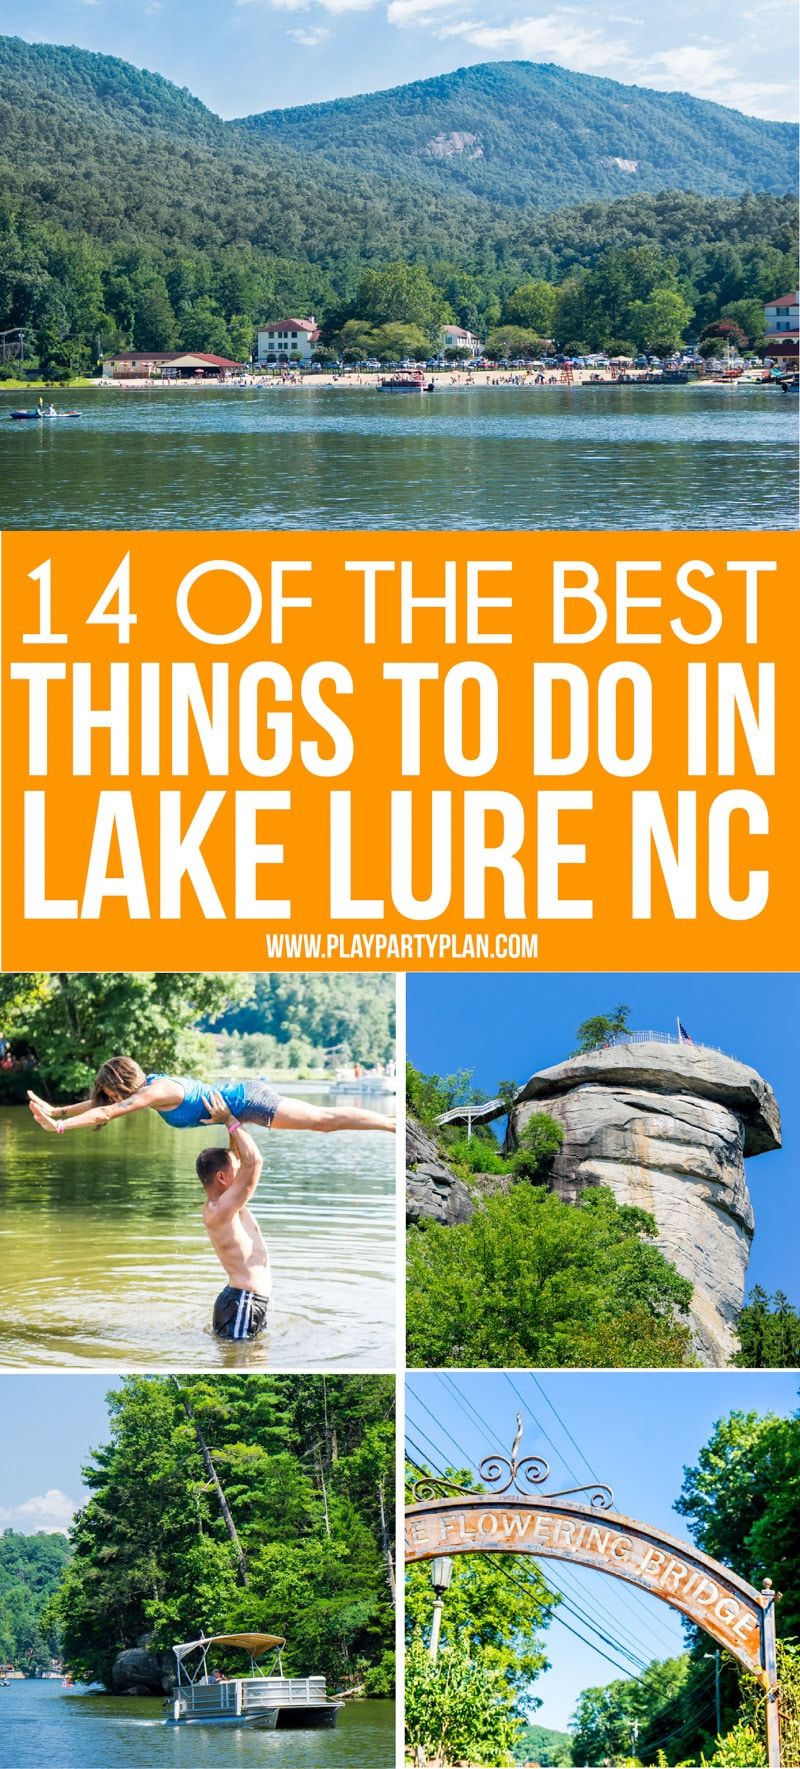 Μια εικόνα κολάζ με δραστηριότητες που πρέπει να κάνετε στο Lake Lure NC